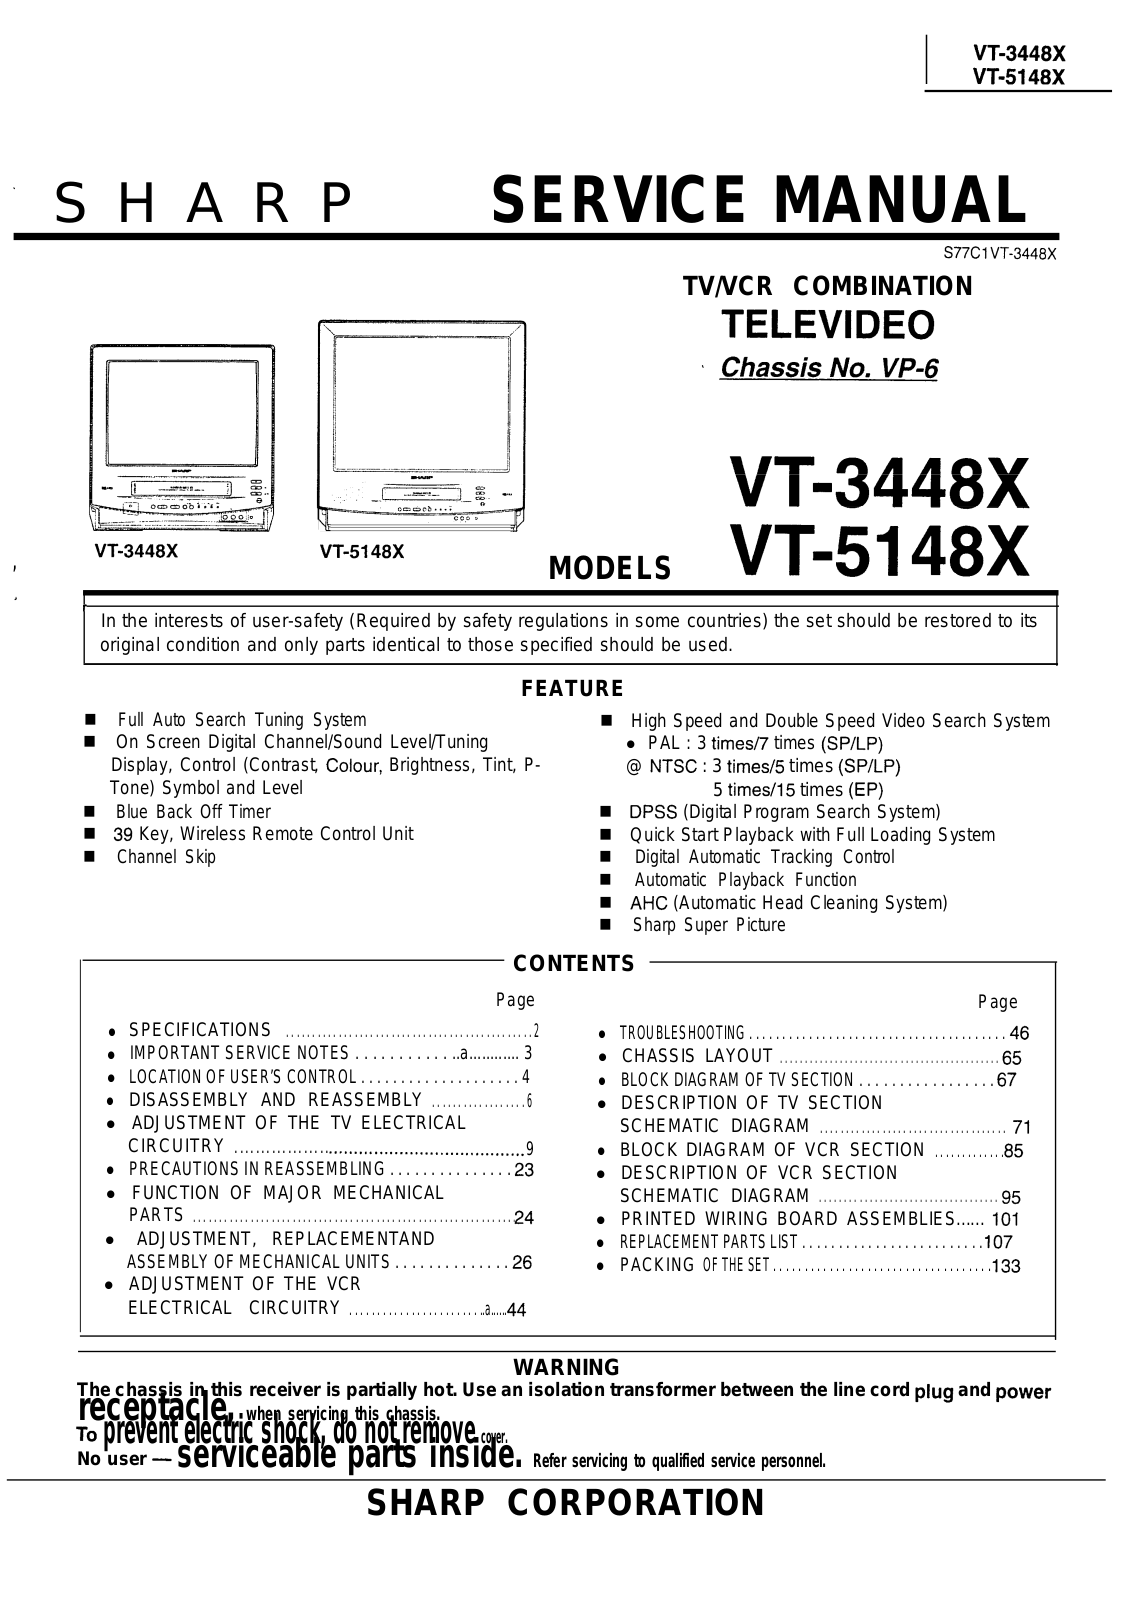 SHARP VT-3448X, VT-5148X Service Manual